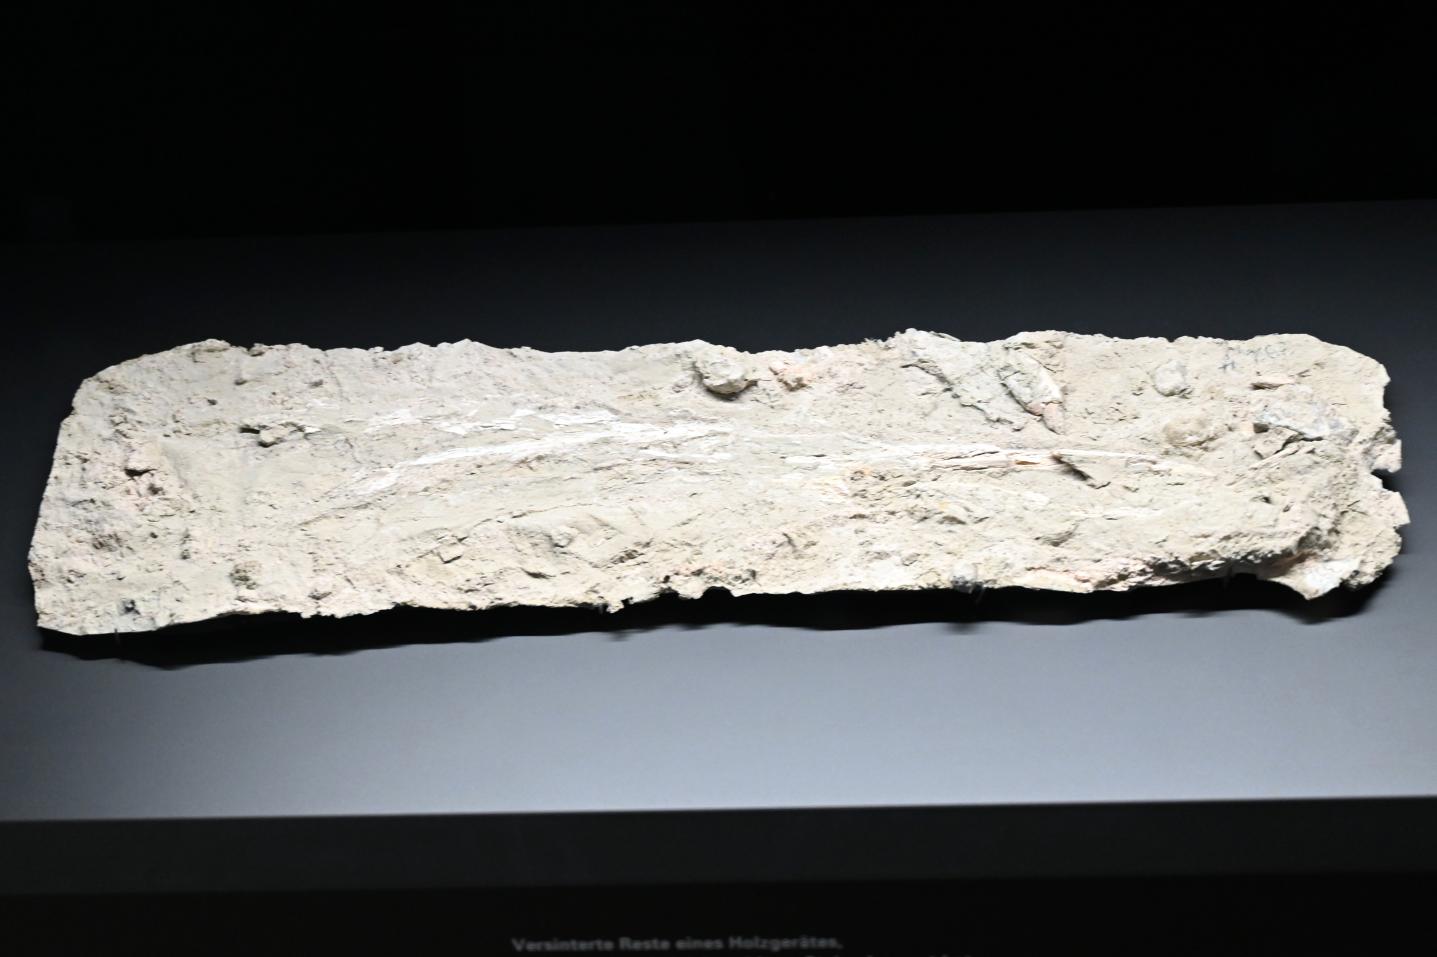 Versinterte Reste eines Holzgerätes, Reinsdorf-Warmzeit, 370000 v. Chr., 370000 v. Chr., Bild 1/2